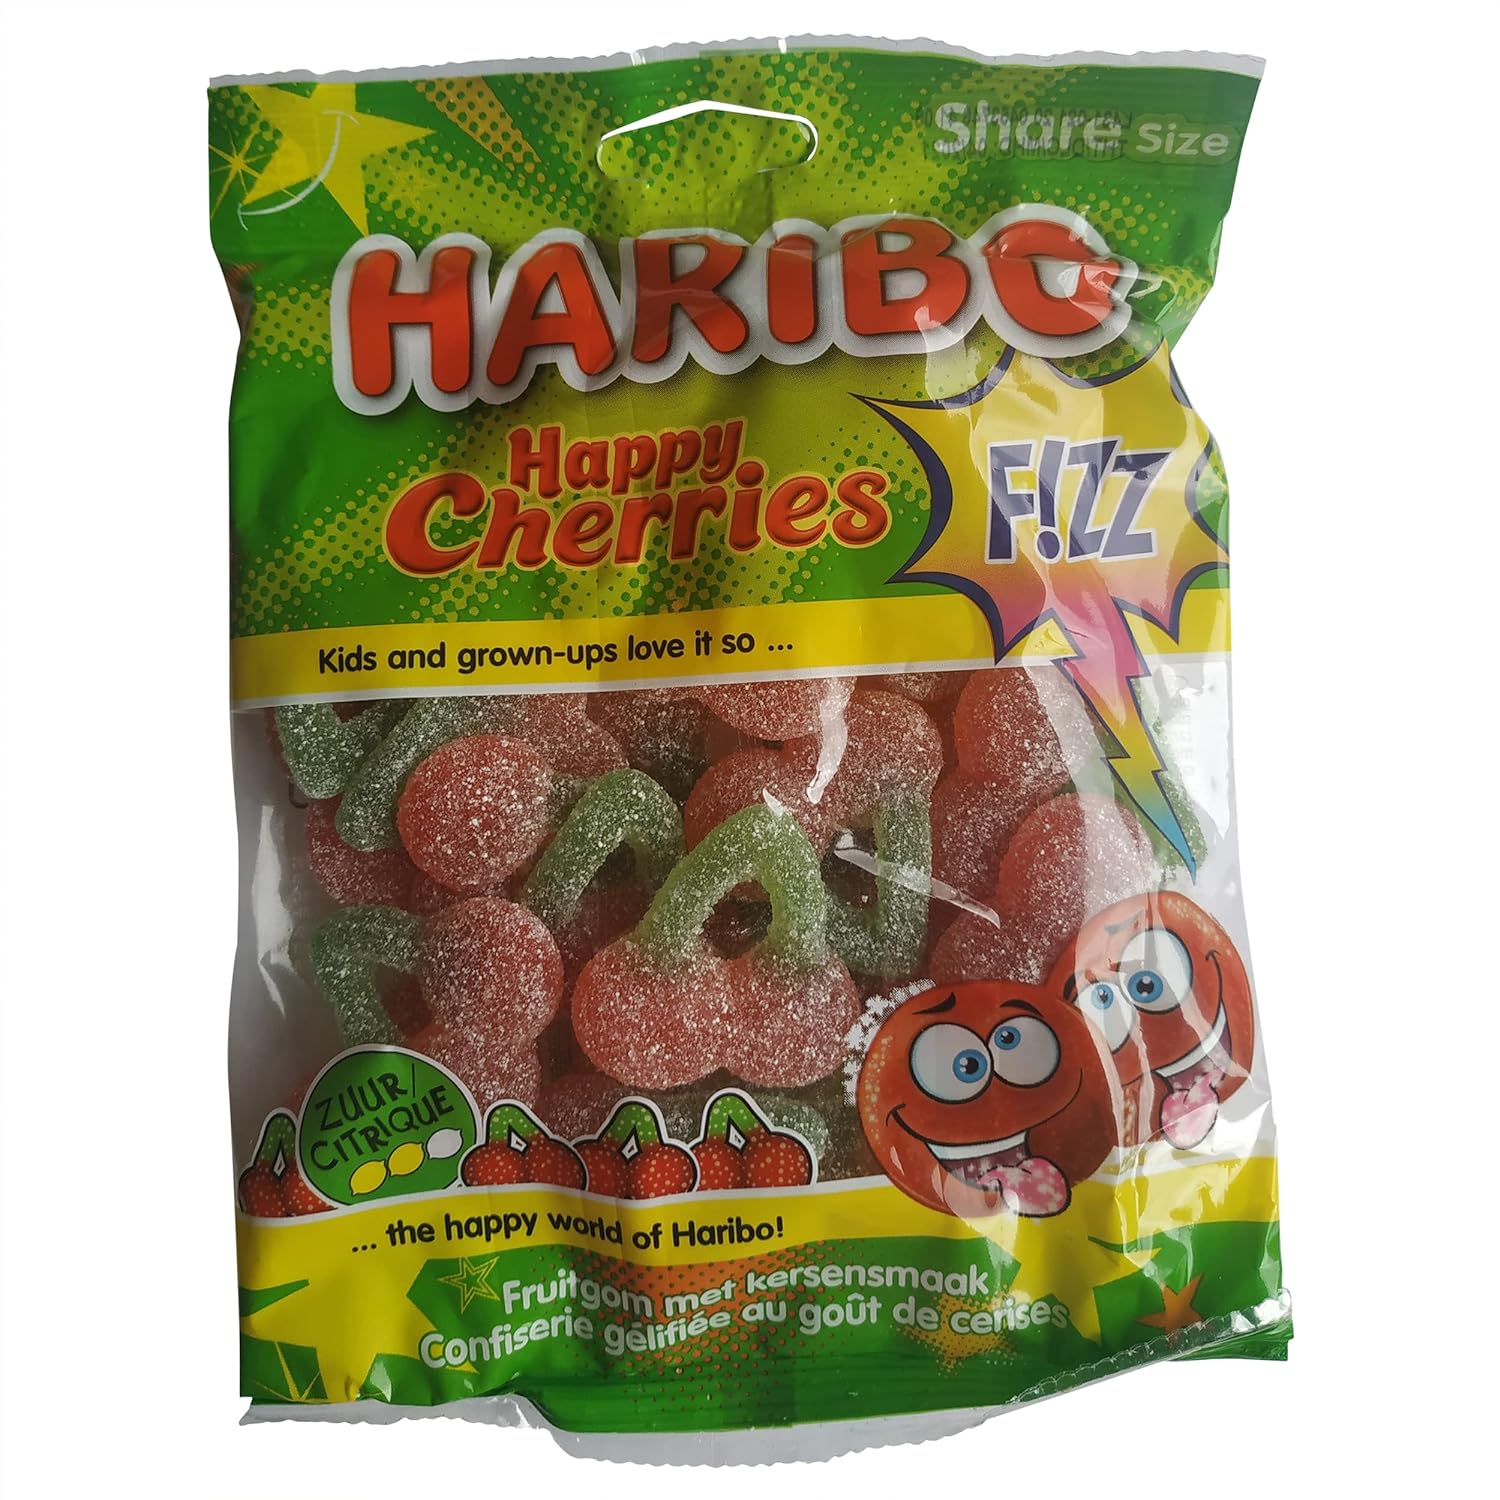 Haribo Happy Cherries Fizz - 1kg